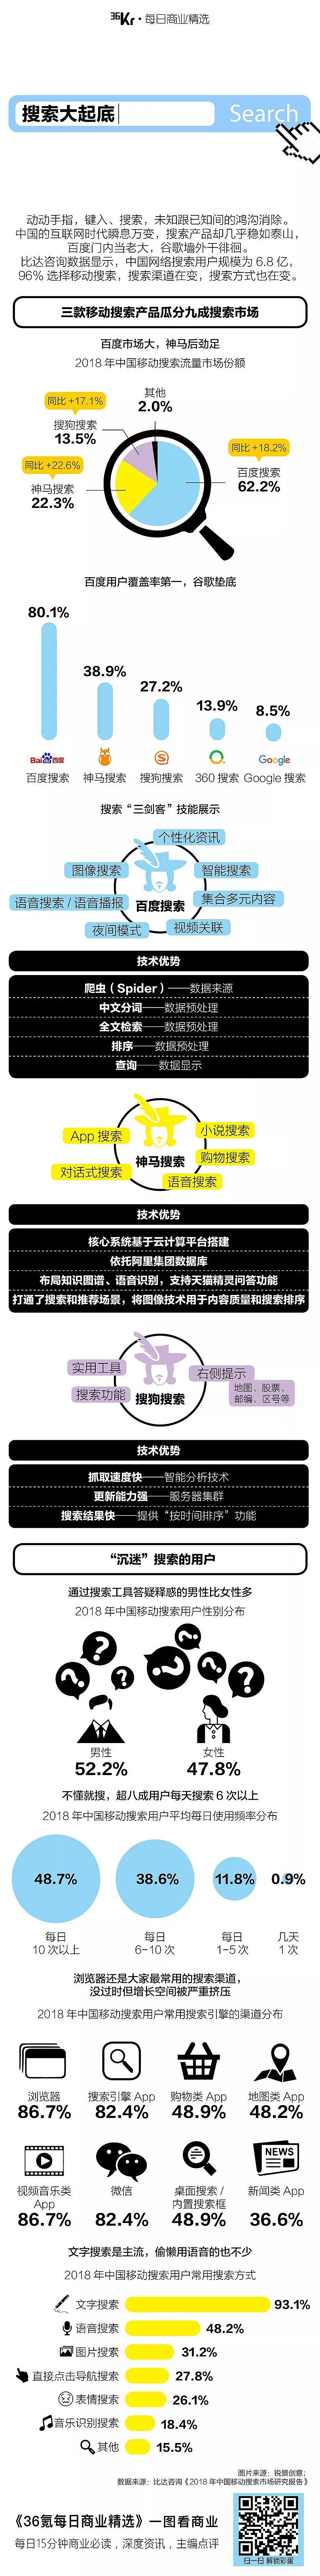 8点1氪：苹果中国全系降价：iPhone最高降500元；余承东回应华为不上市原因；熊猫直播正式关停 - 11